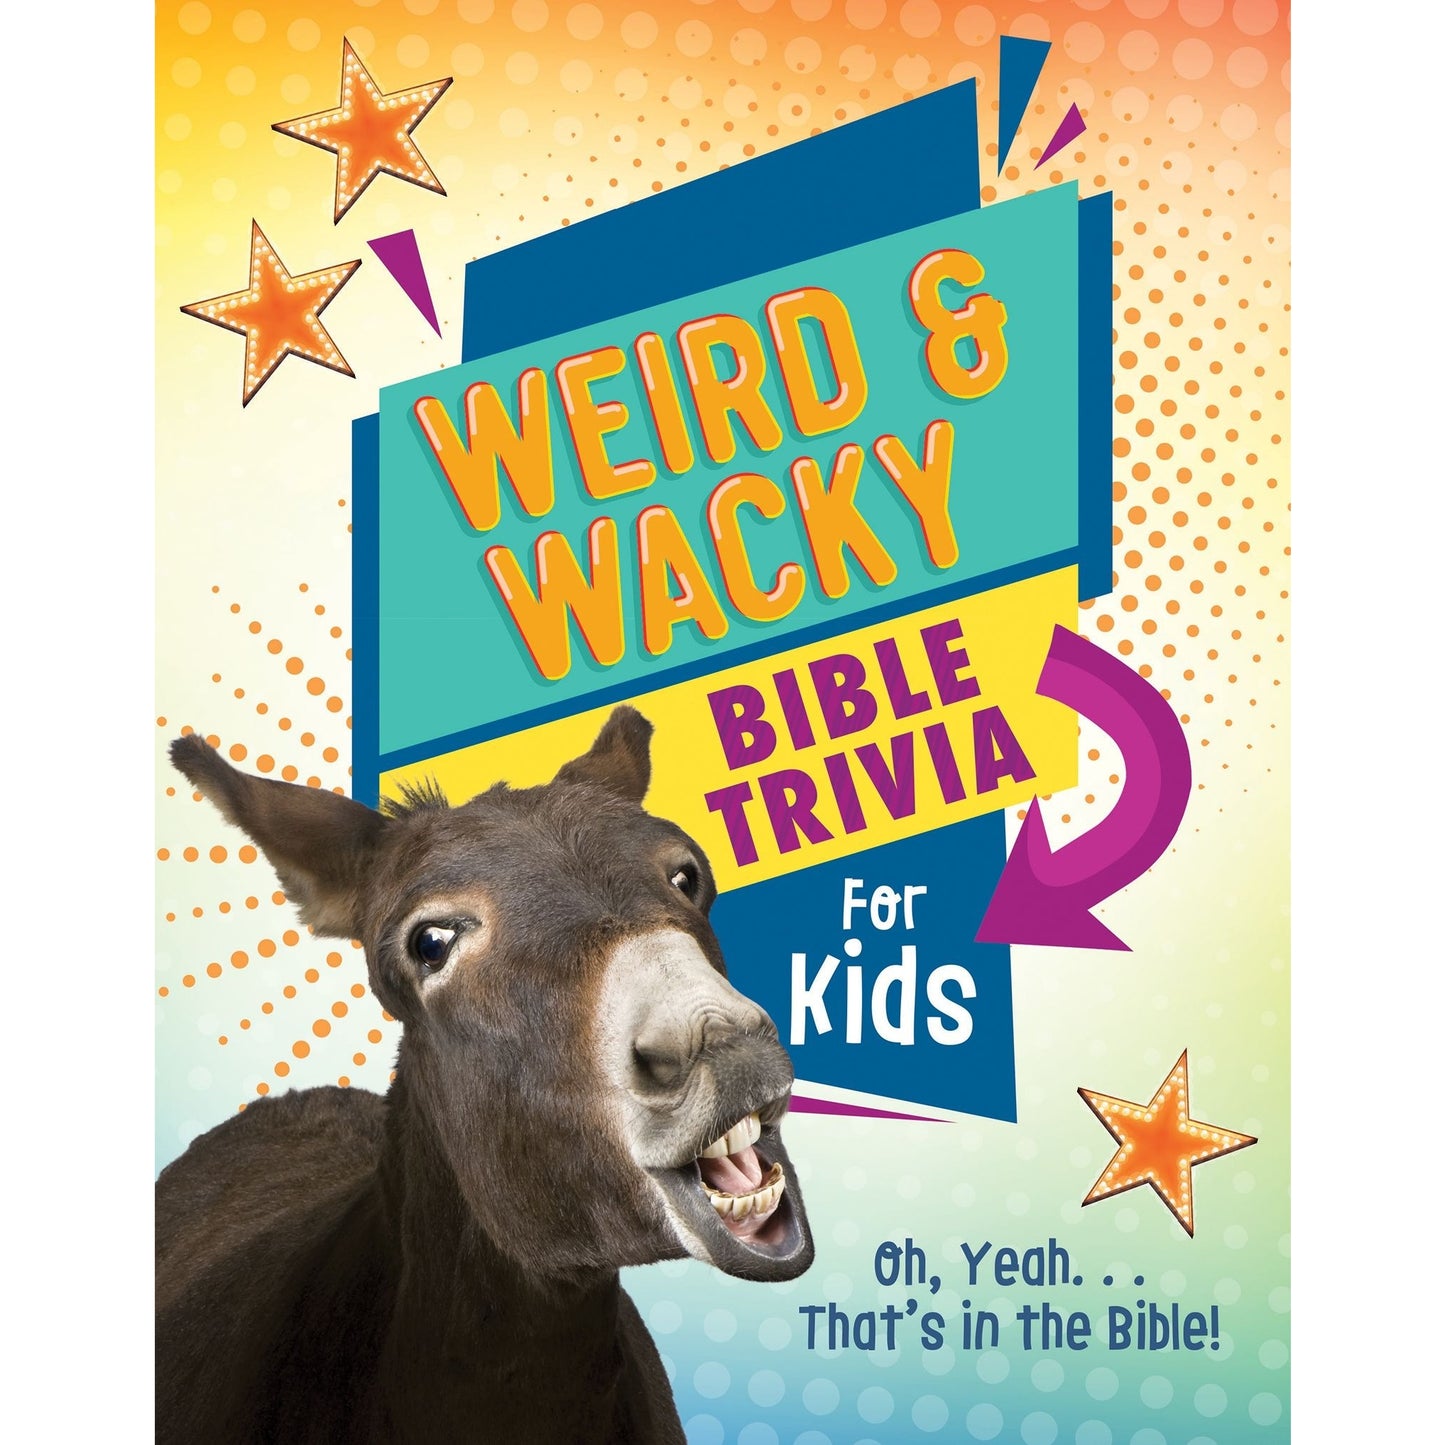 Weird & Wacky Bible Trivia for Kids